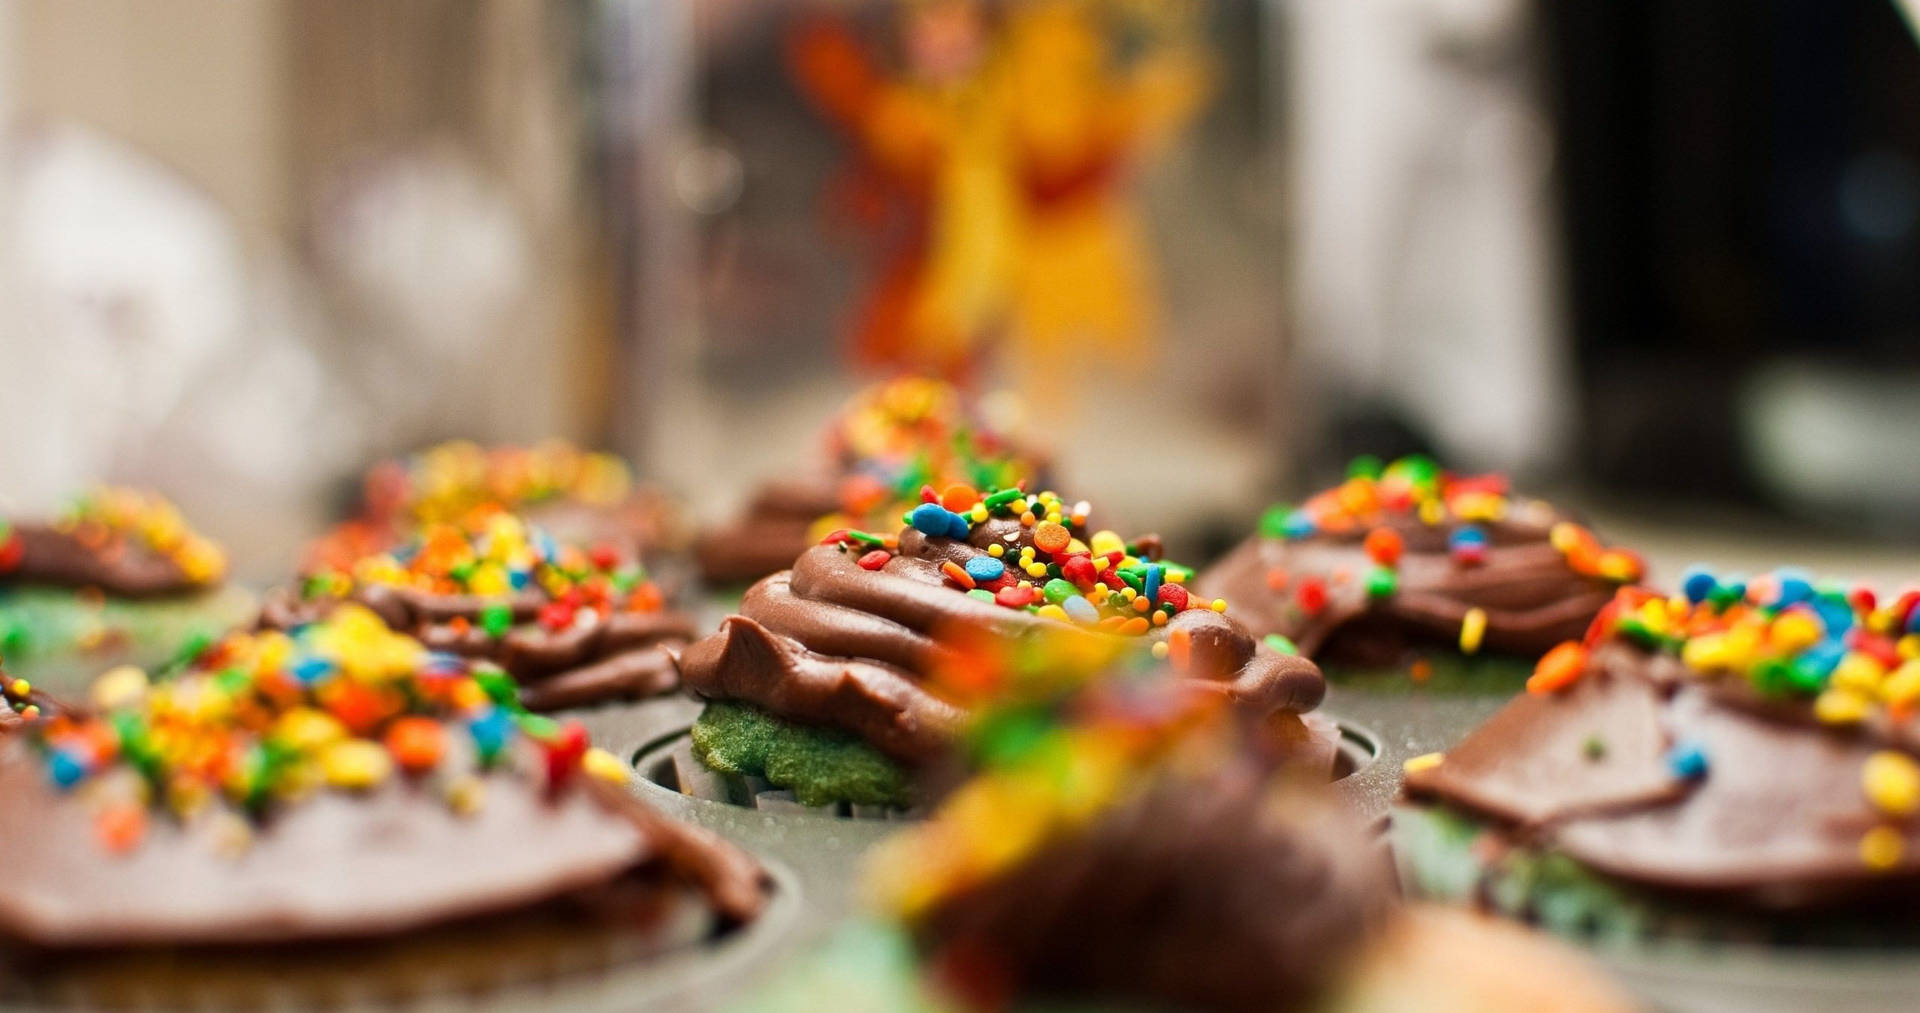 Sprinkled Cupcake Desserts Wallpaper